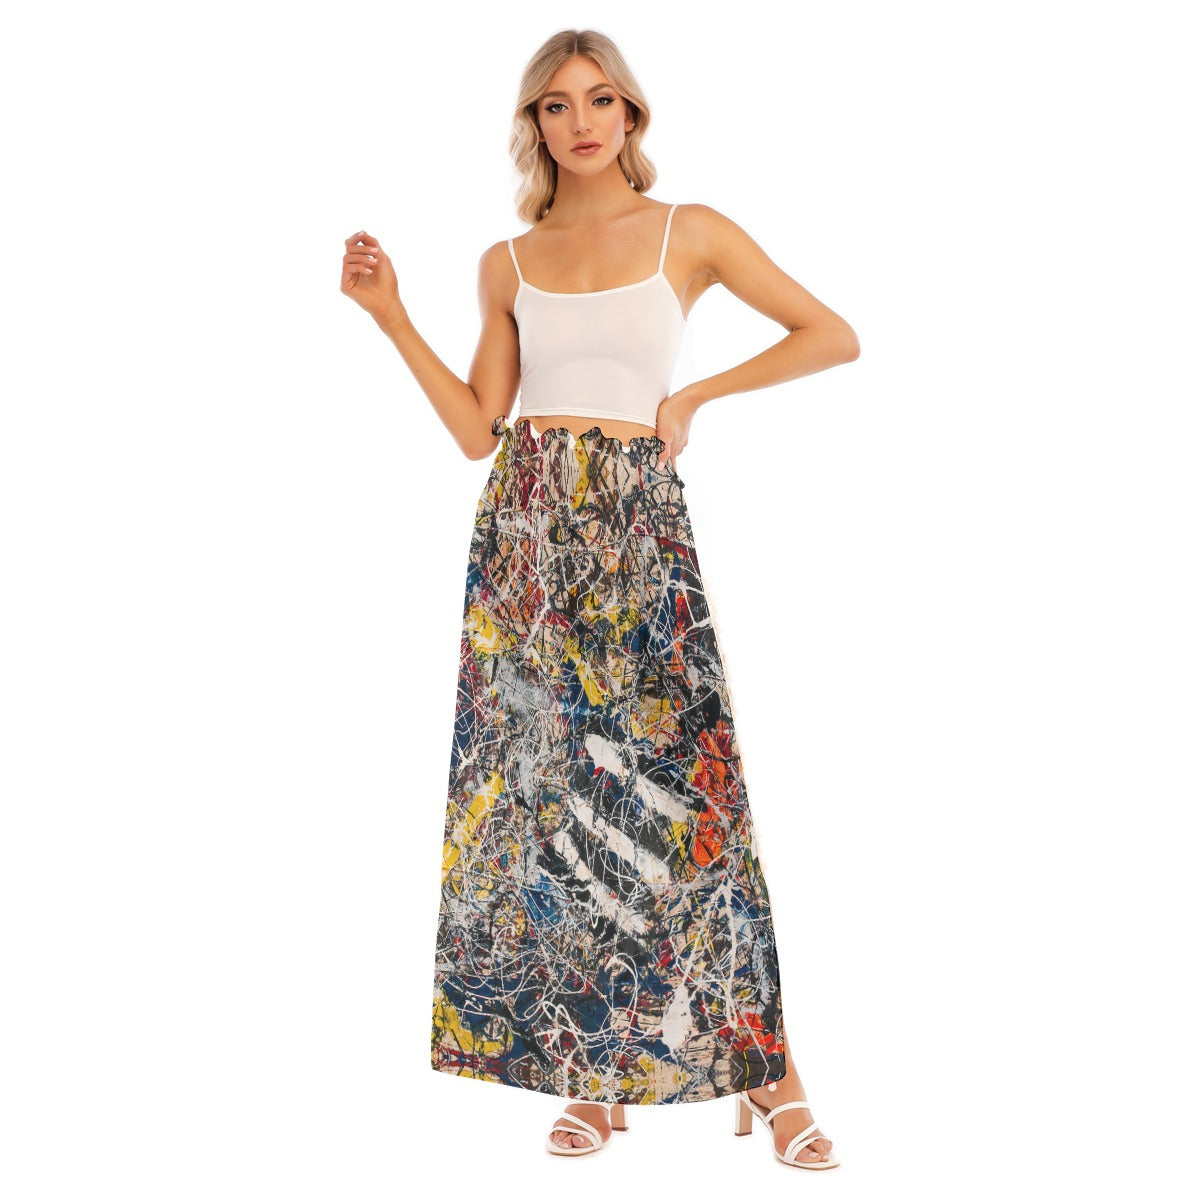 Vibrant splatter design on side split skirt